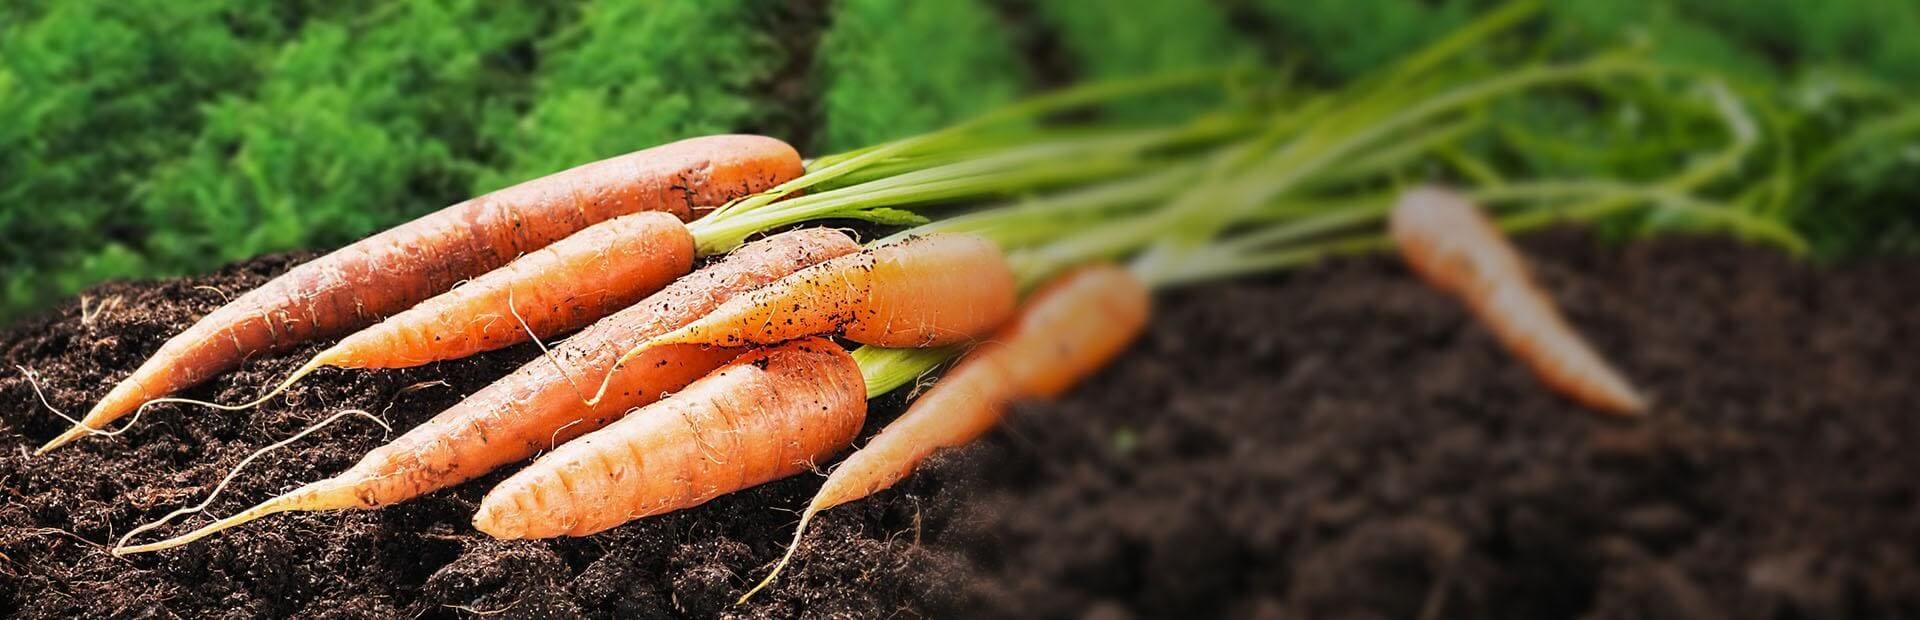 Produkcja warzyw – wiedza, pasja i nowoczesność